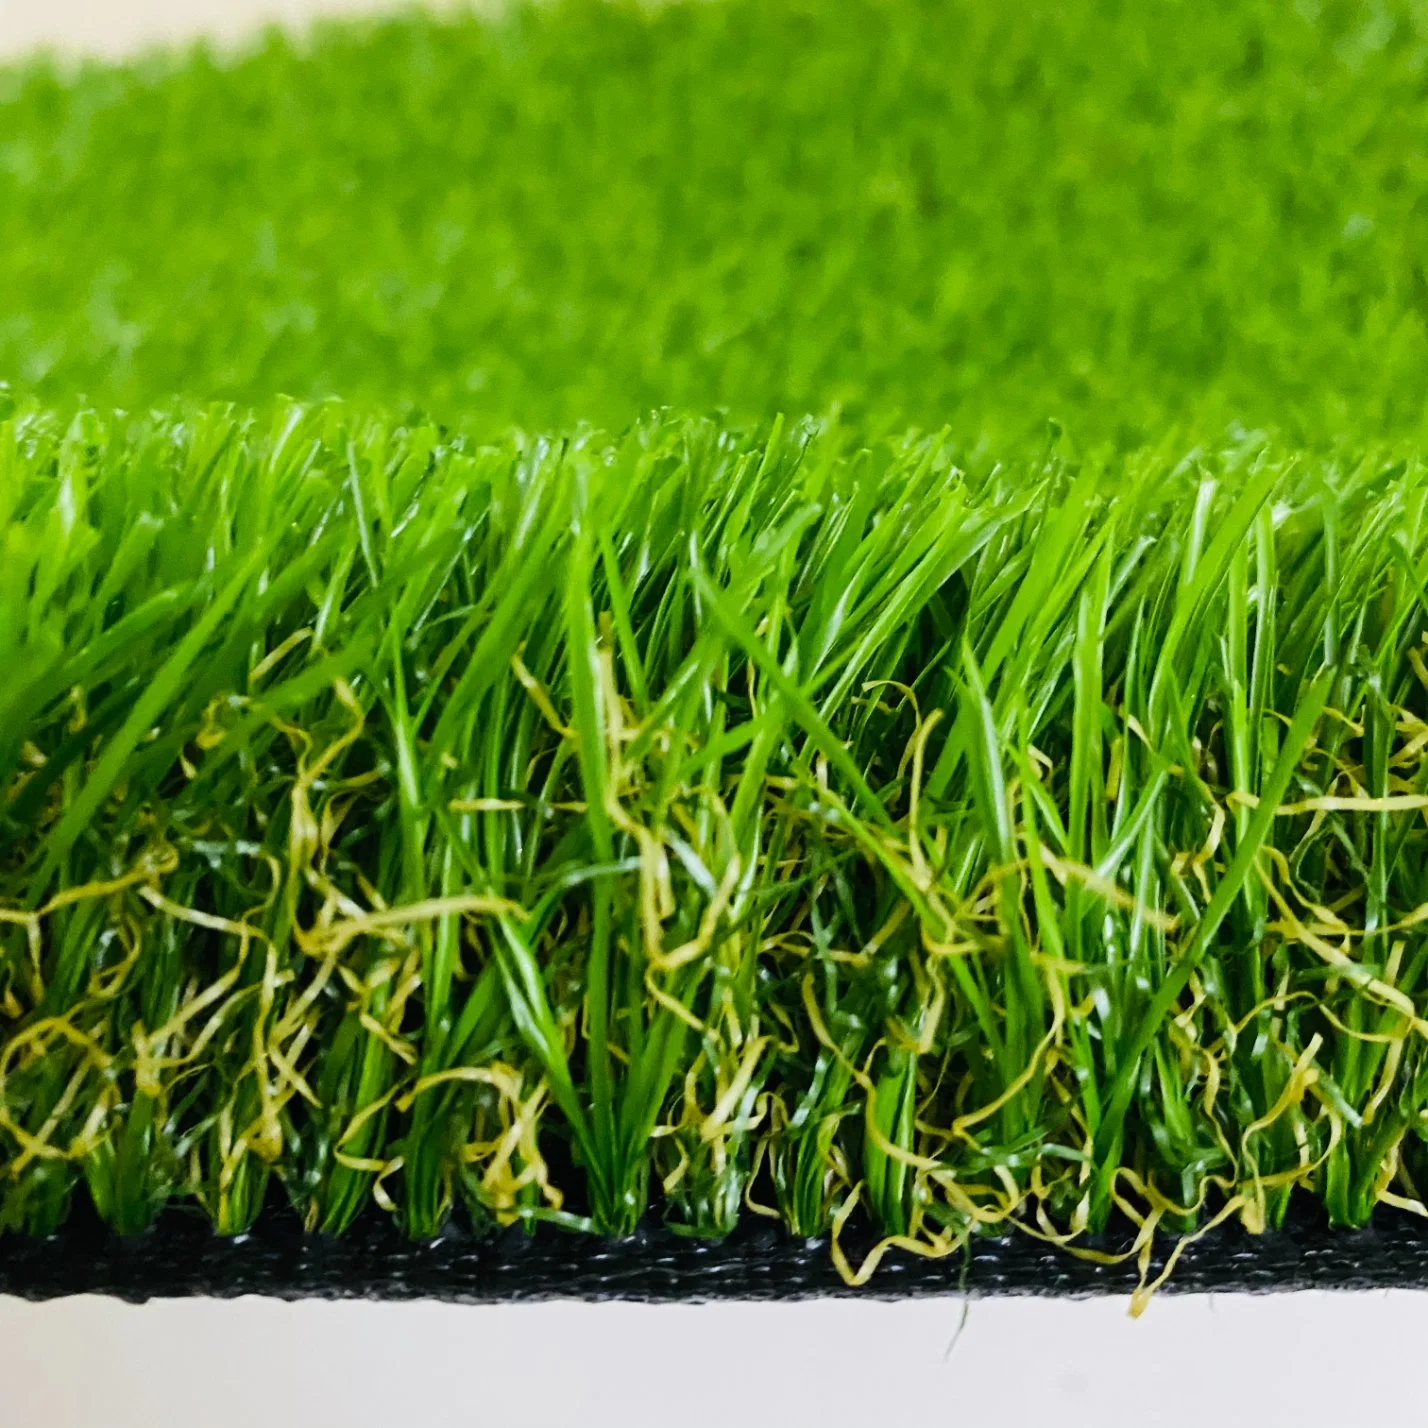 Оптовые цены на заводе зеленый поддельные травы синтетическим покрытием пейзаж коврик Коврик для травяных культур сад газон искусственных травяных футбол футбольное поле для гольфа спорта синтетических травы